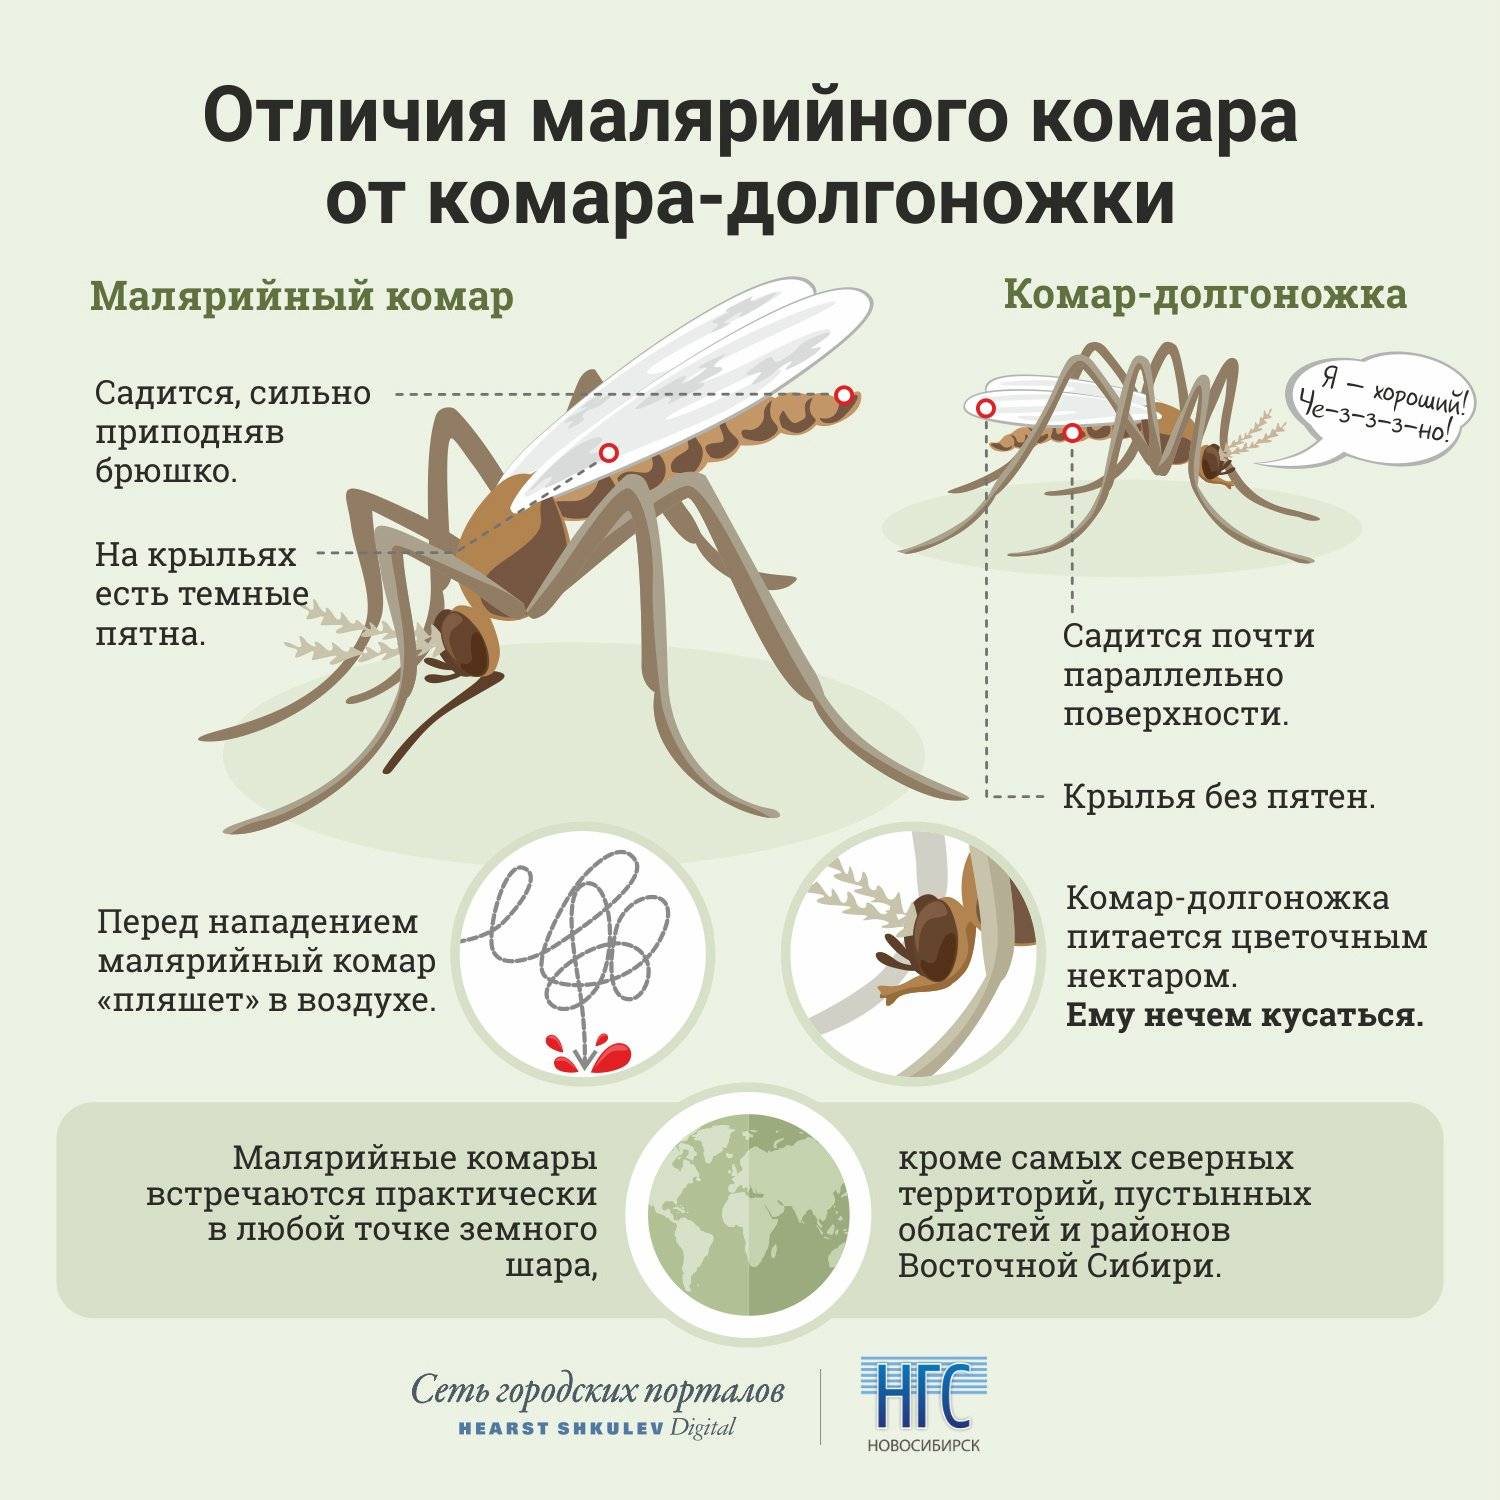 Как избавиться от комаров в доме – препараты и народные средства!